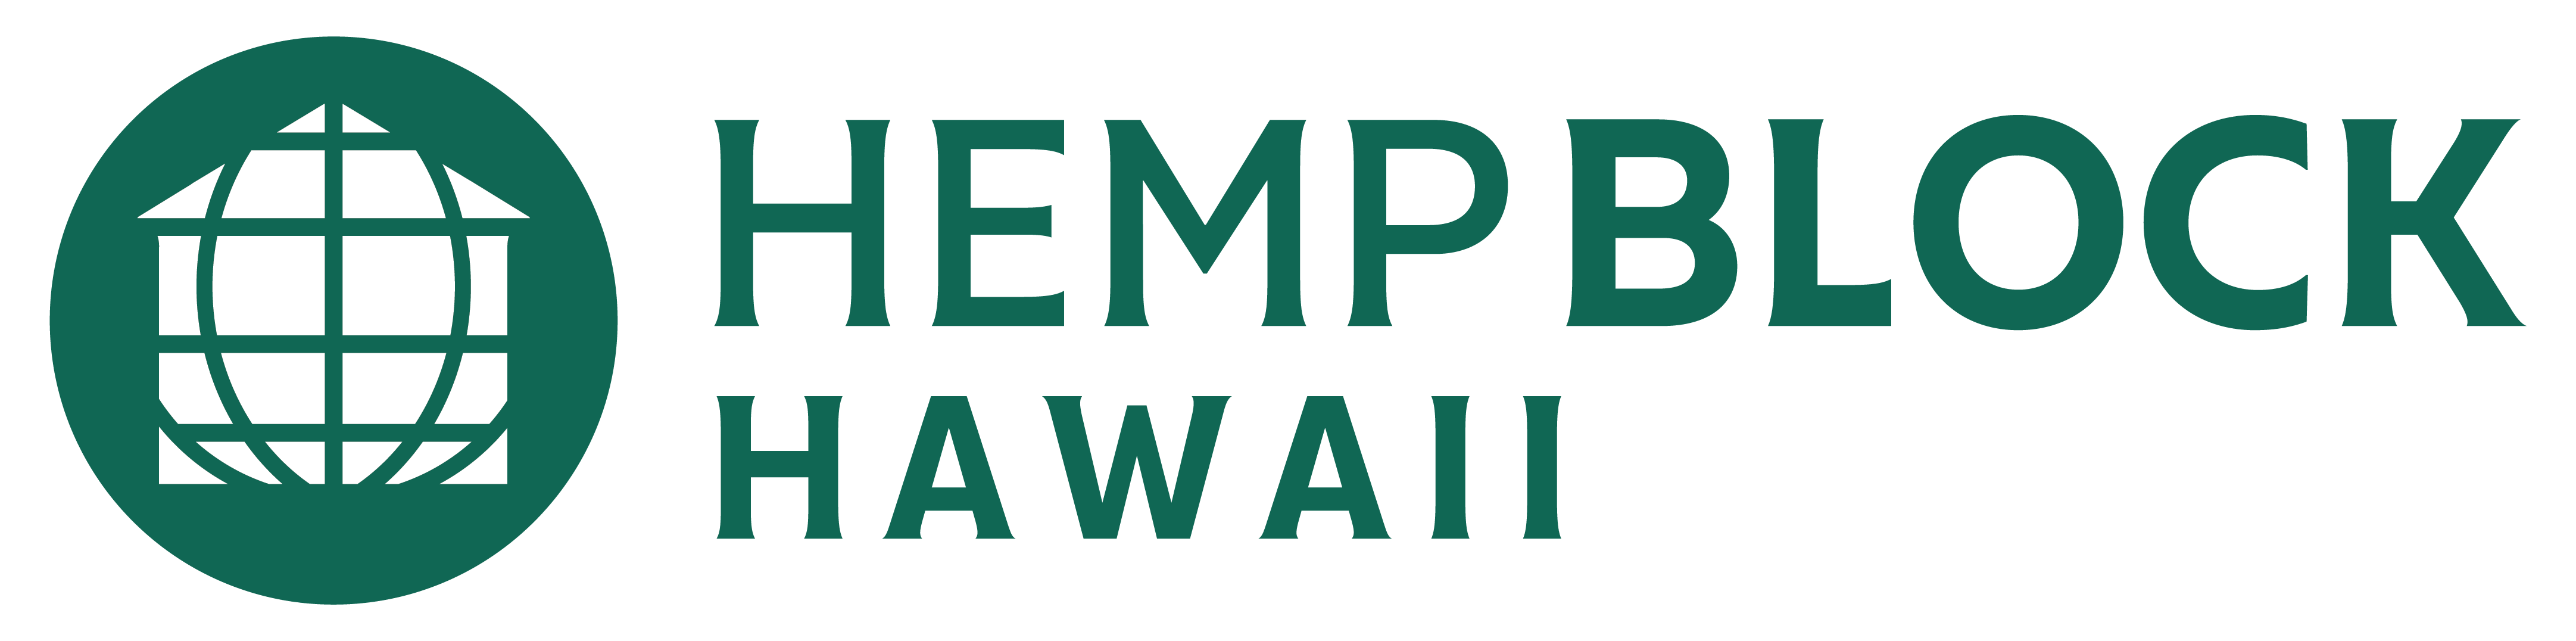 Hemp Block Hawaii